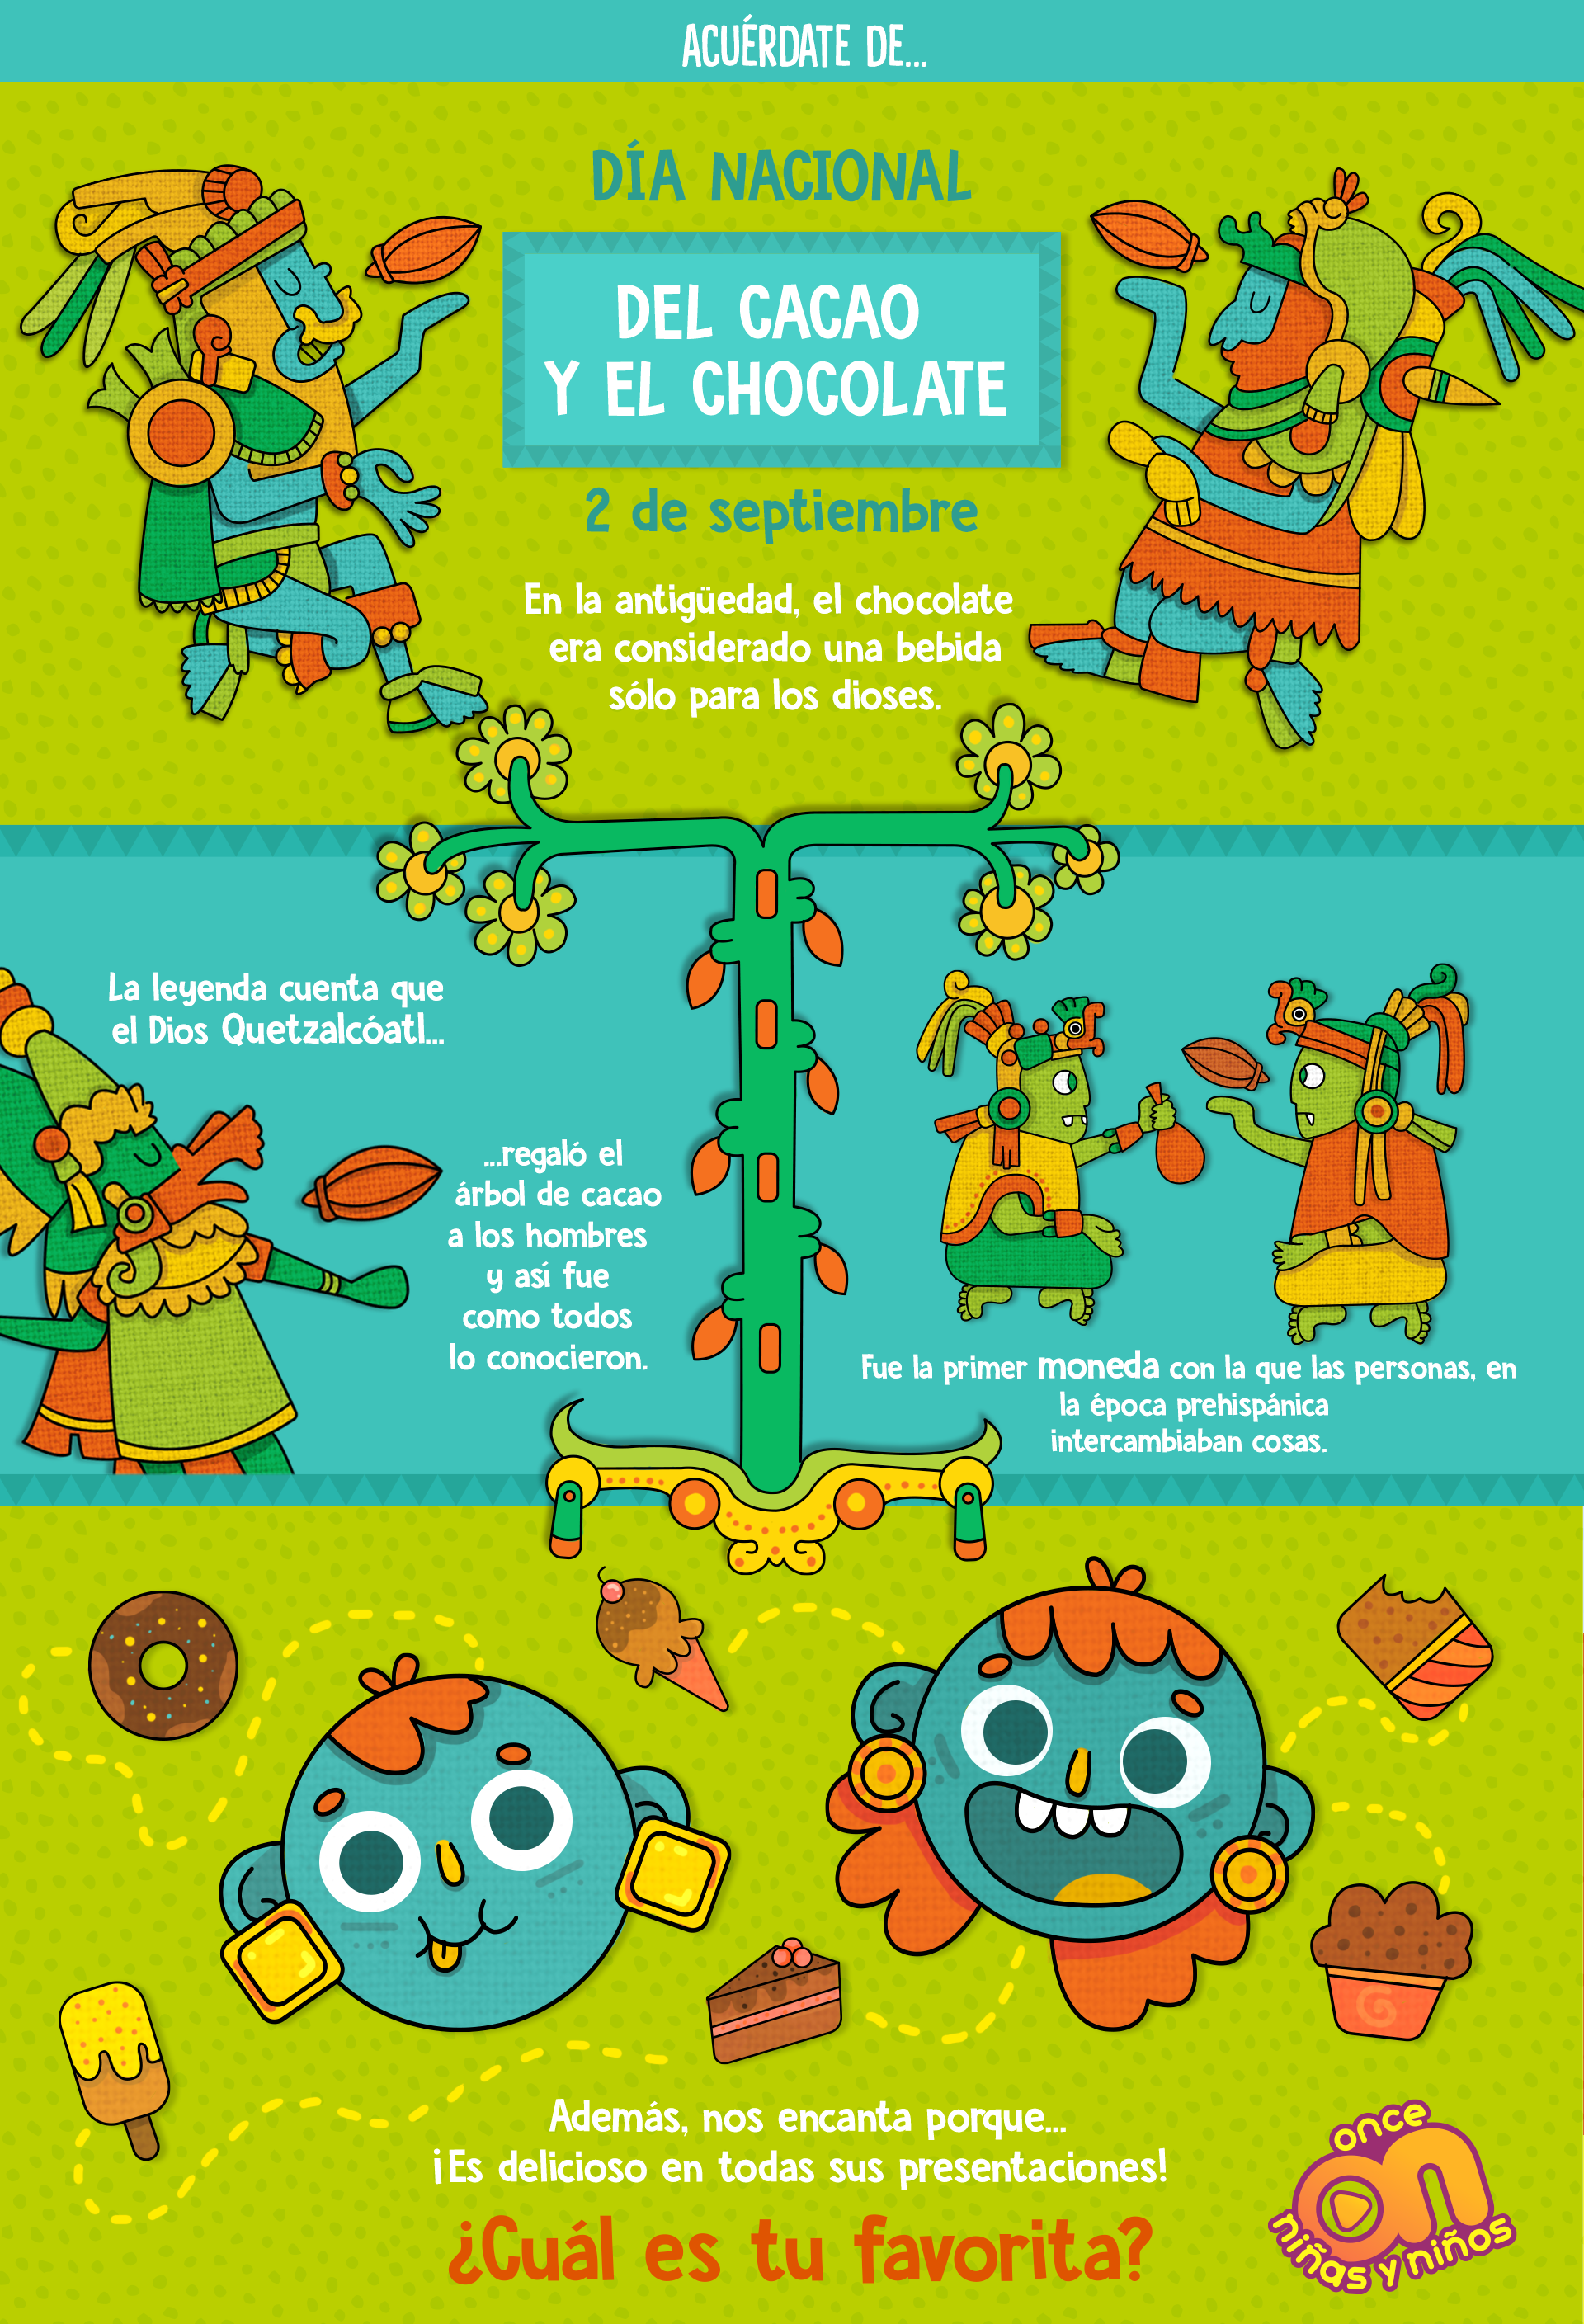 Acuérdate de... Día Nacional del cacao y el chocolate
2 de septiembre
Once Niñas y Niños 